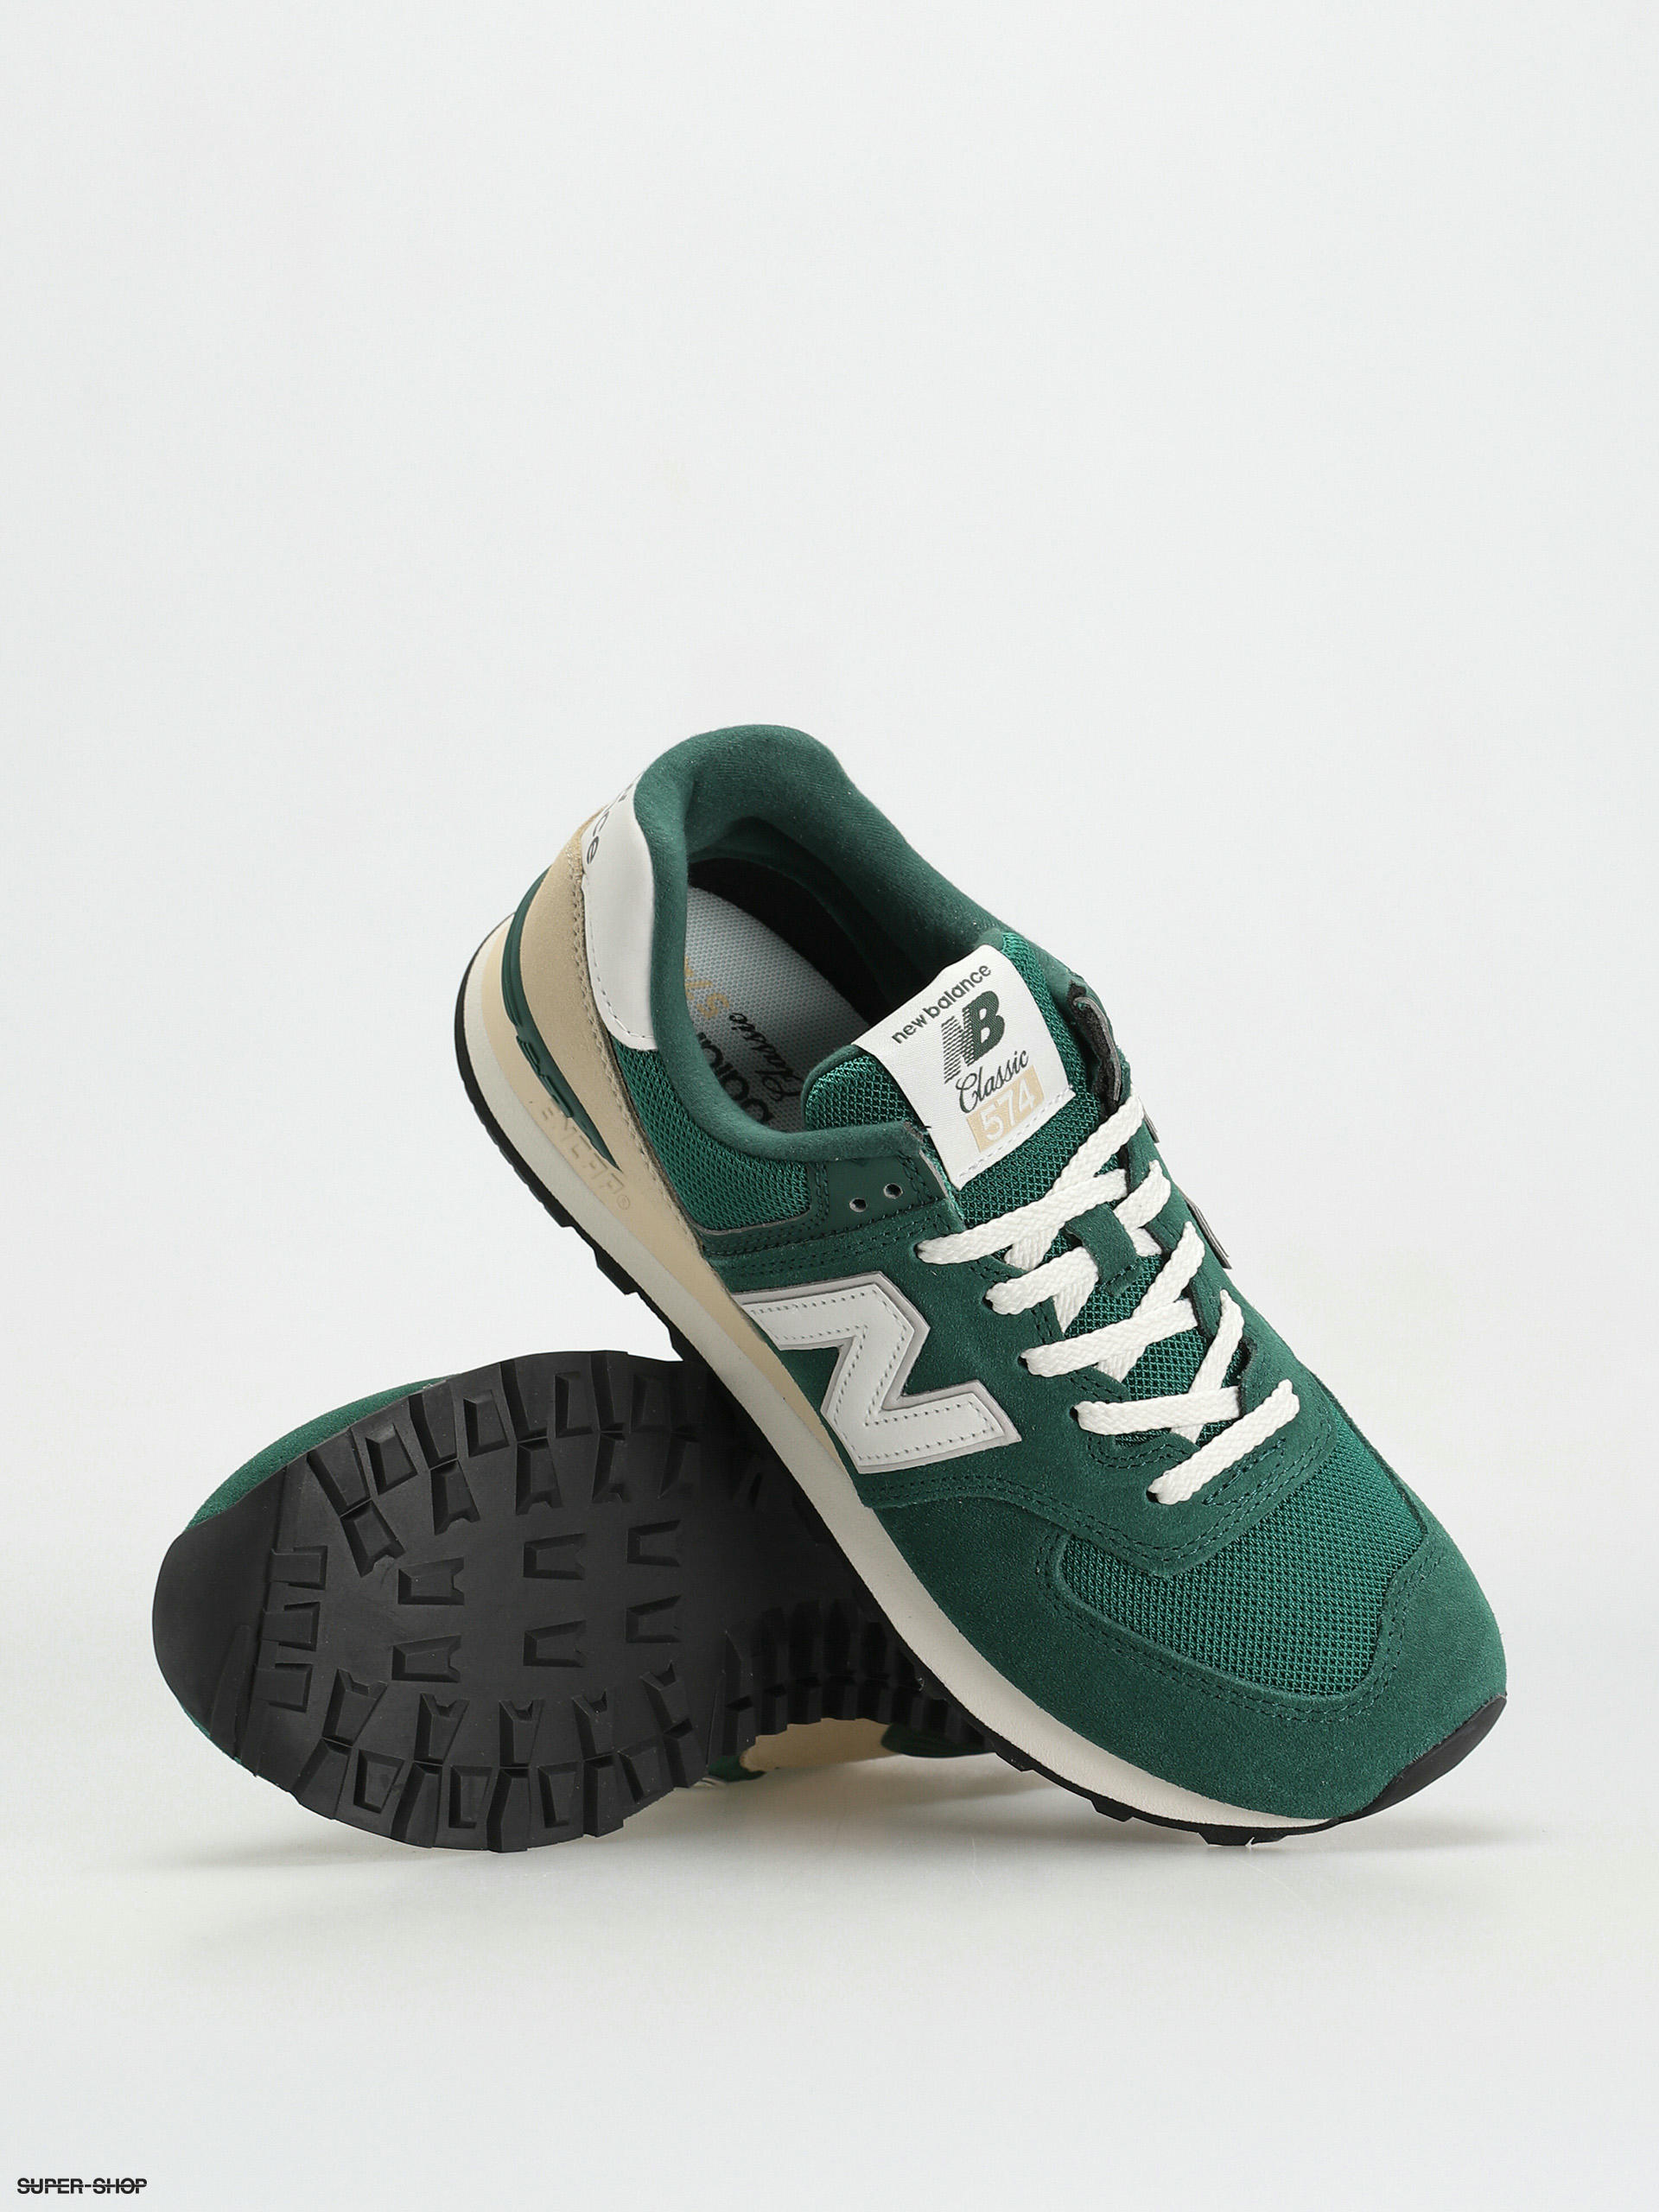 Formulering niet Verwarren New Balance 574 Shoes (green)